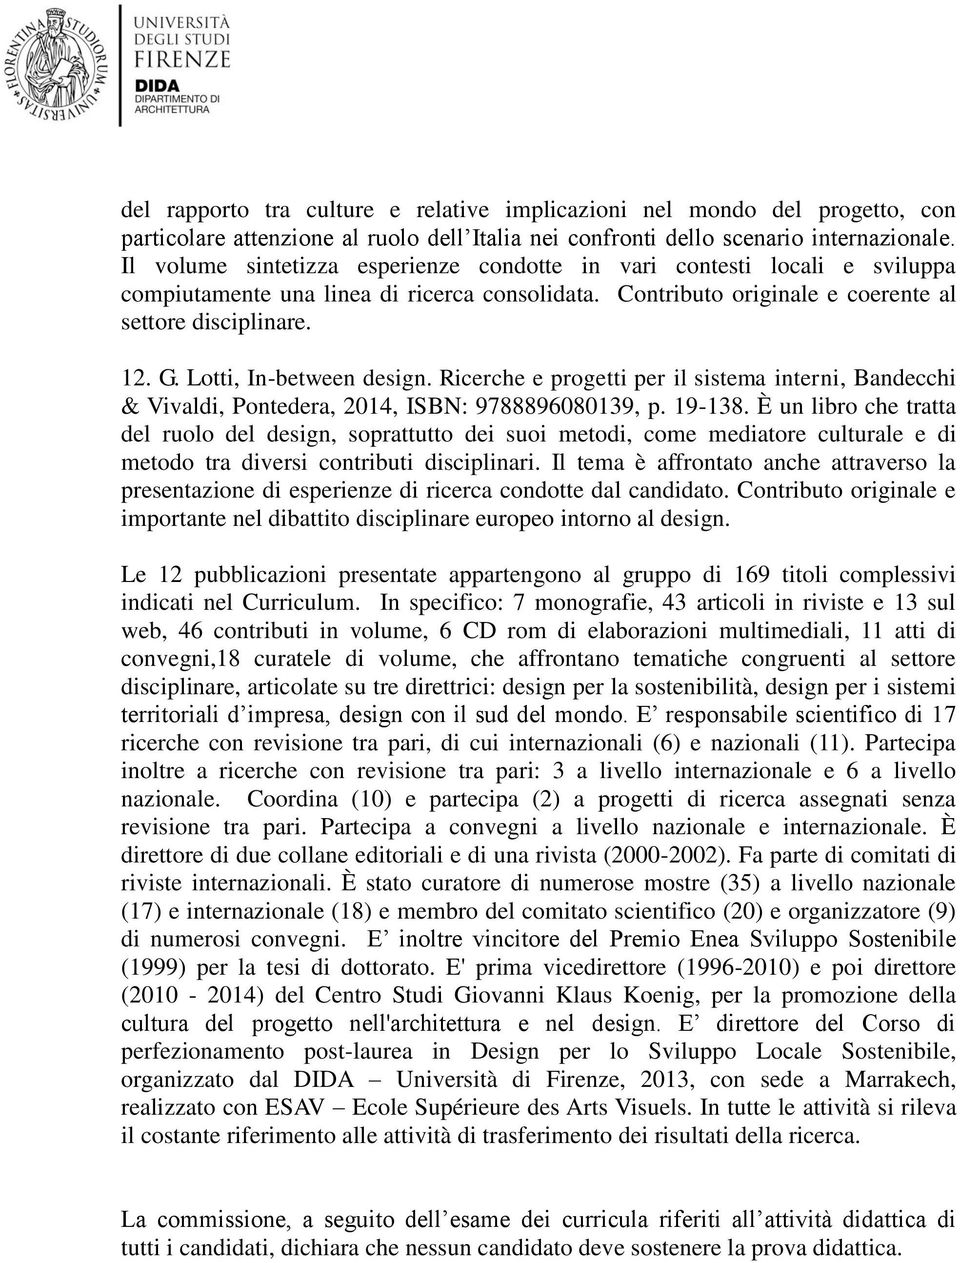 Lotti, In-between design. Ricerche e progetti per il sistema interni, Bandecchi & Vivaldi, Pontedera, 2014, ISBN: 9788896080139, p. 19-138.